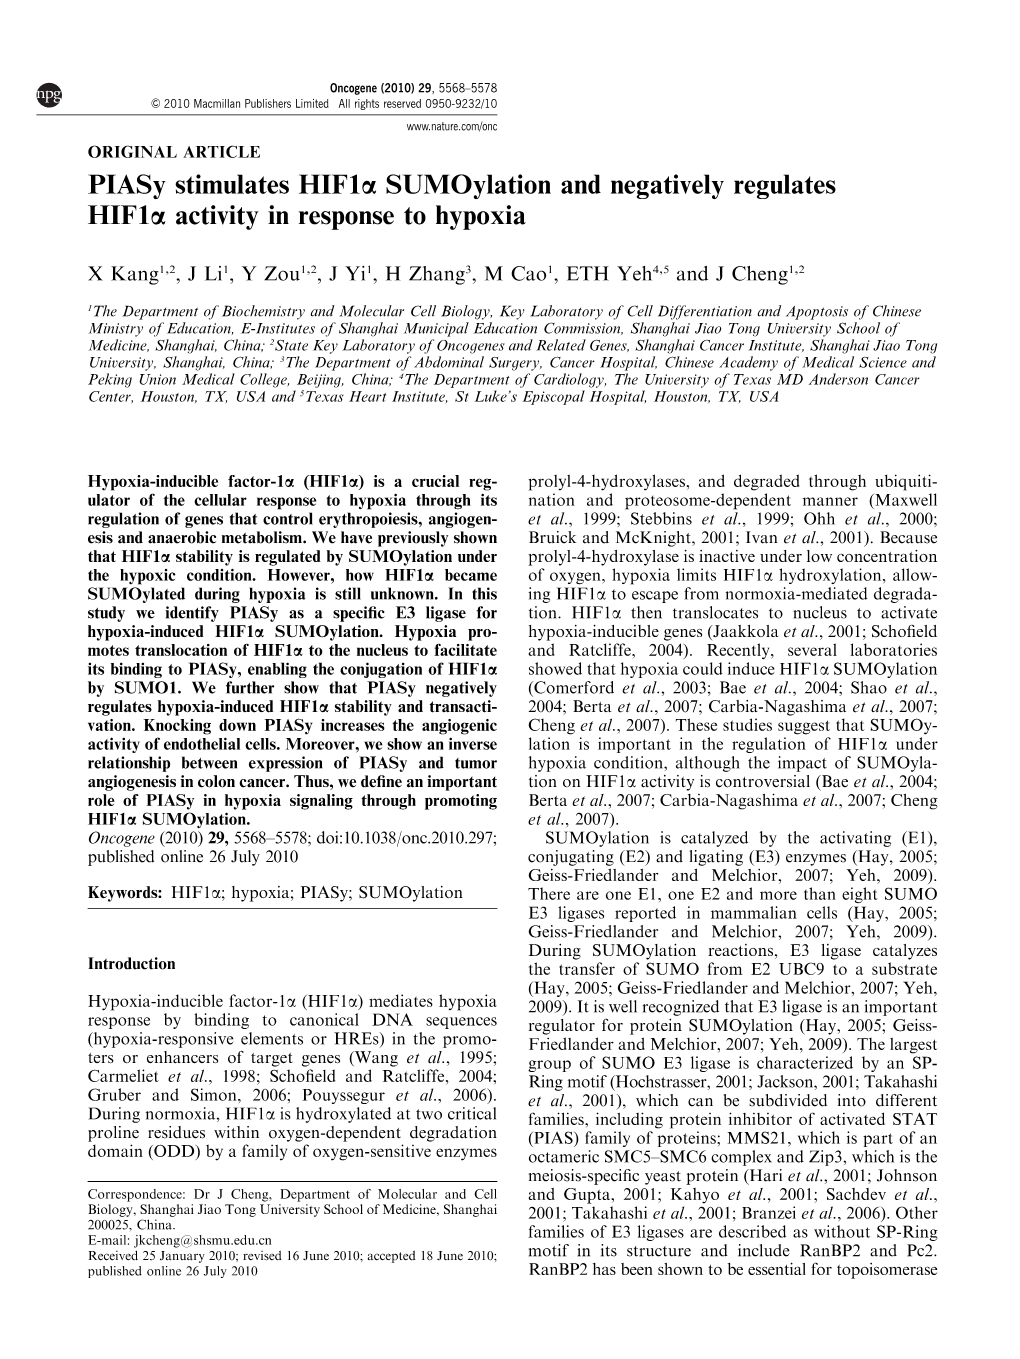 Piasy Stimulates Hif1α Sumoylation and Negatively Regulates